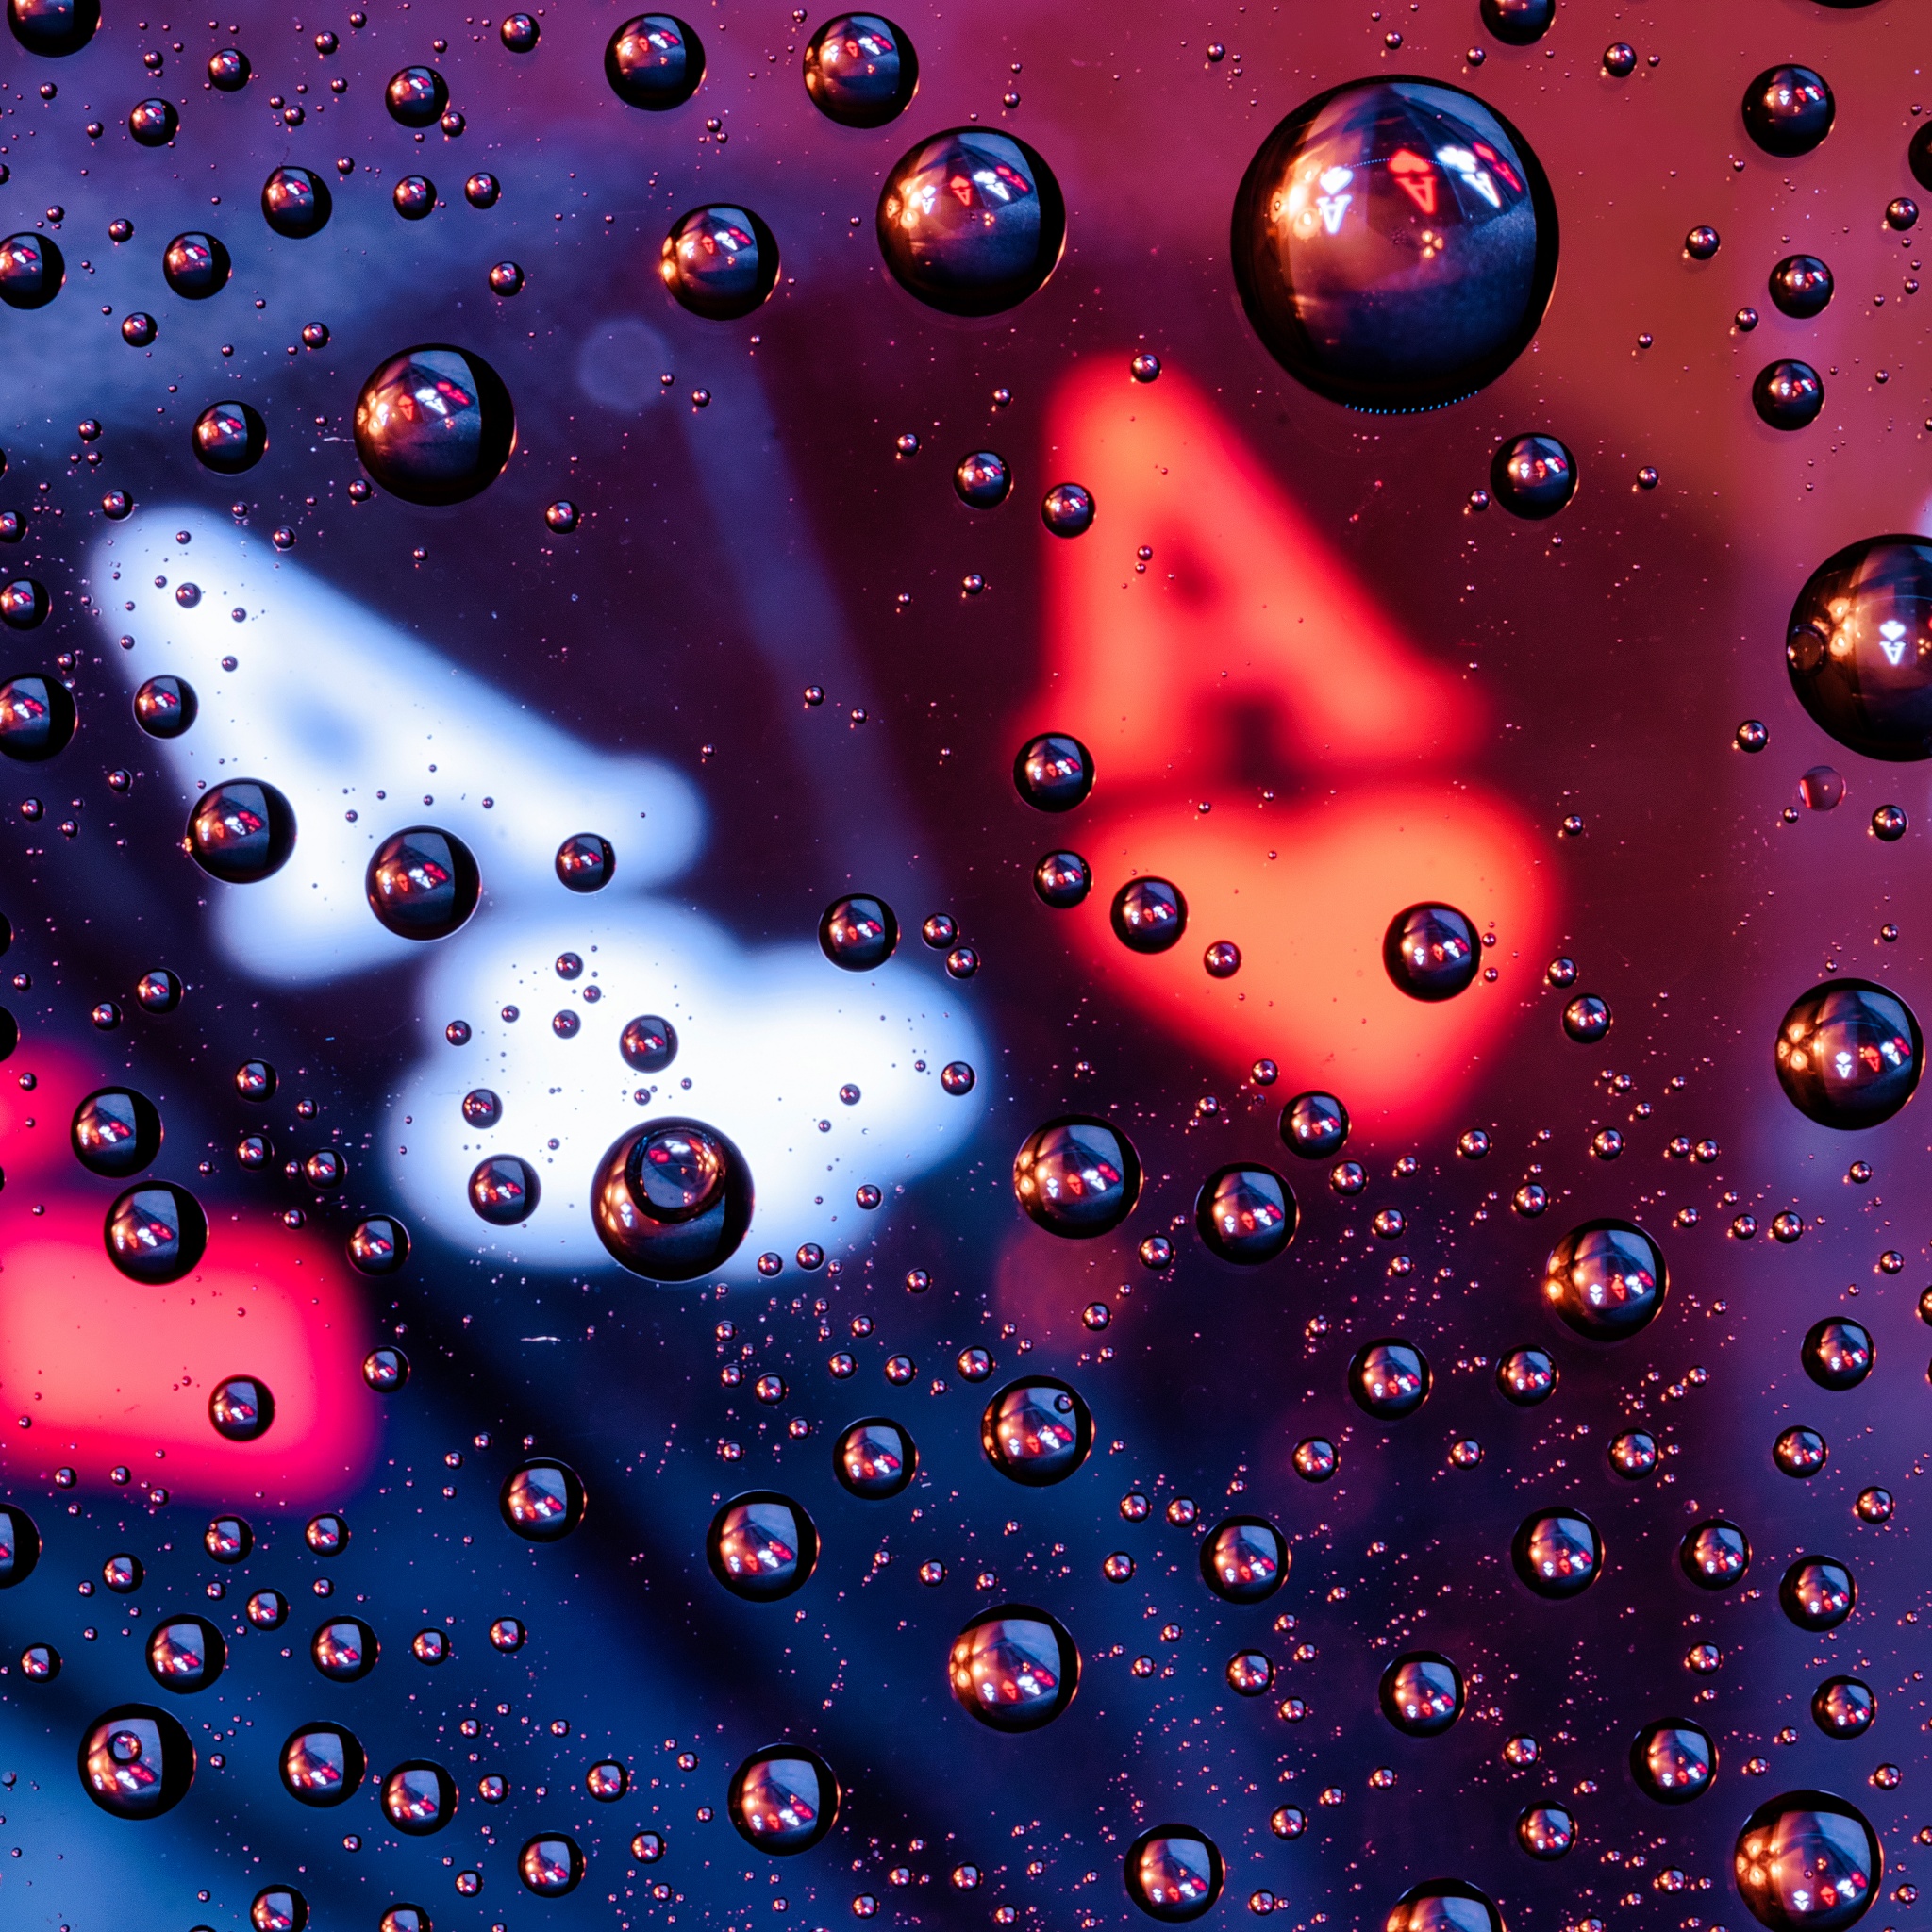 74+] Water Drops Wallpaper - WallpaperSafari